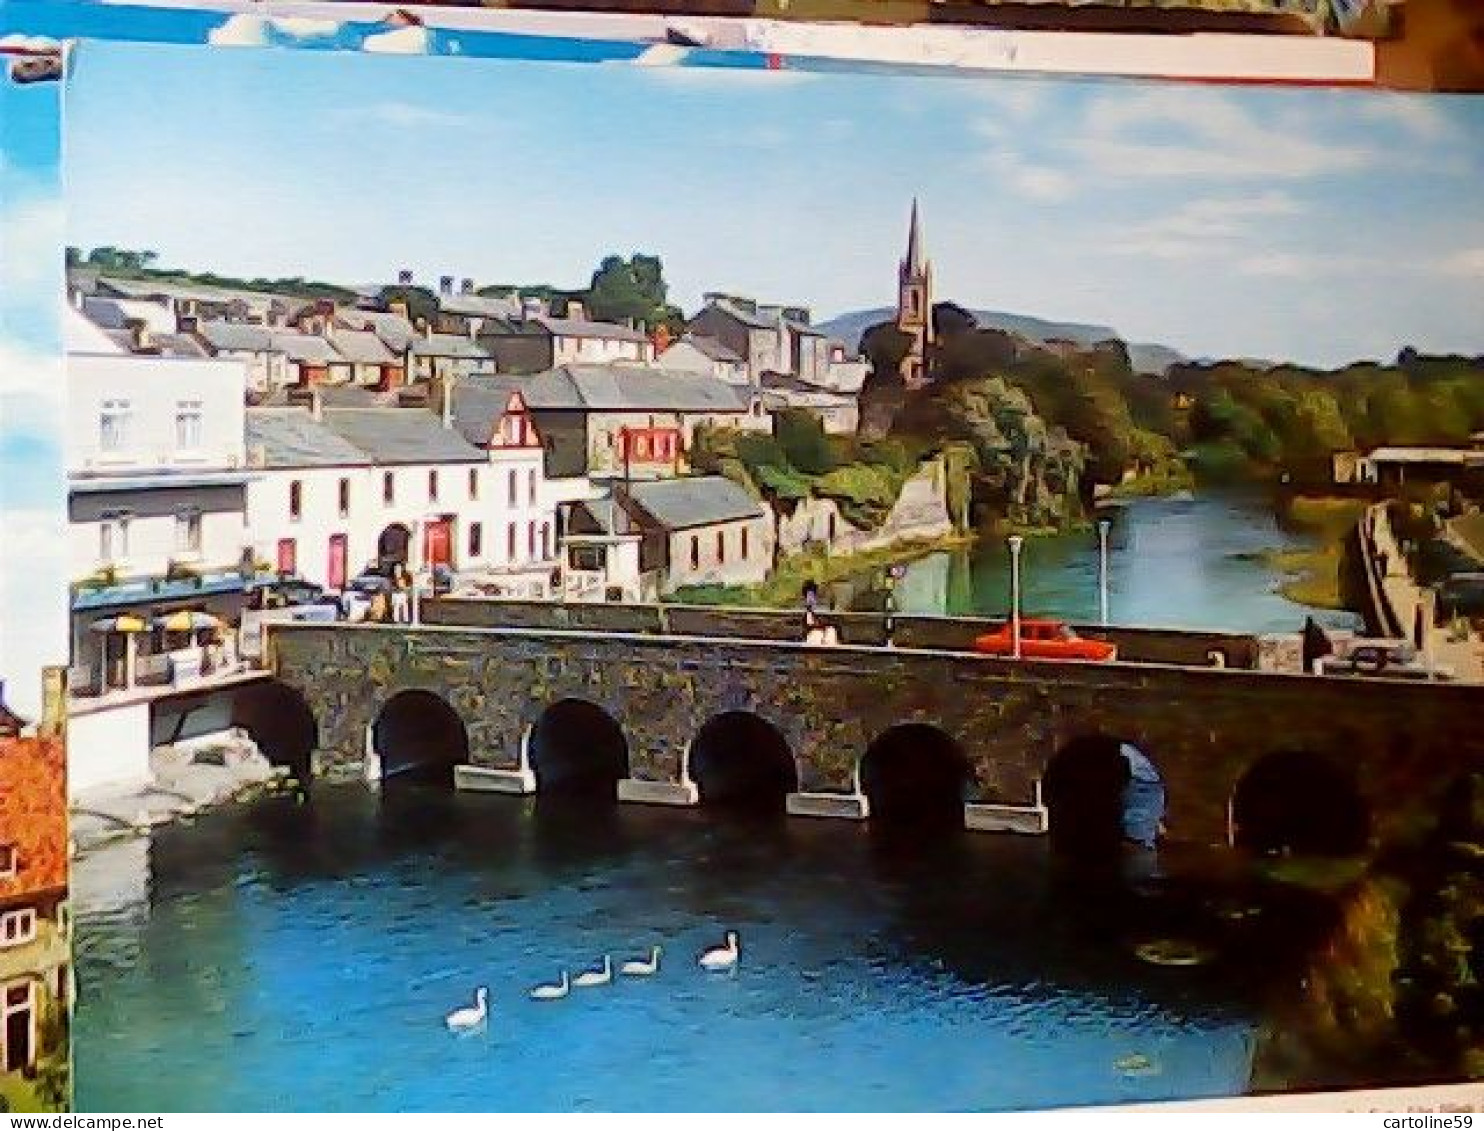 Eire - Ireland - Sligo Town And Garavogue River - Bridge VB1970 JU5282 - Sligo